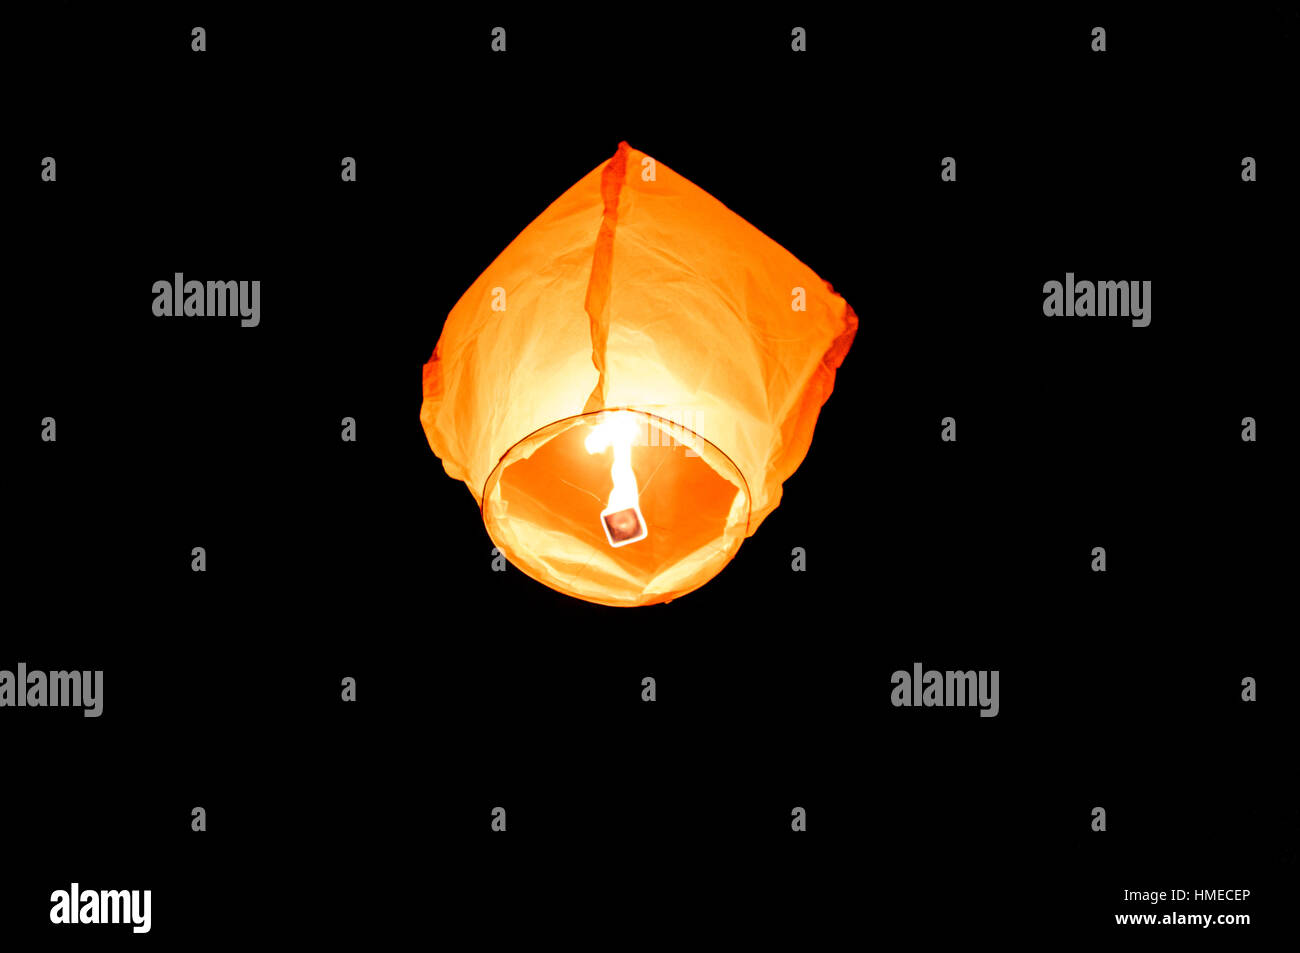 Lanterna volante immagini e fotografie stock ad alta risoluzione - Alamy